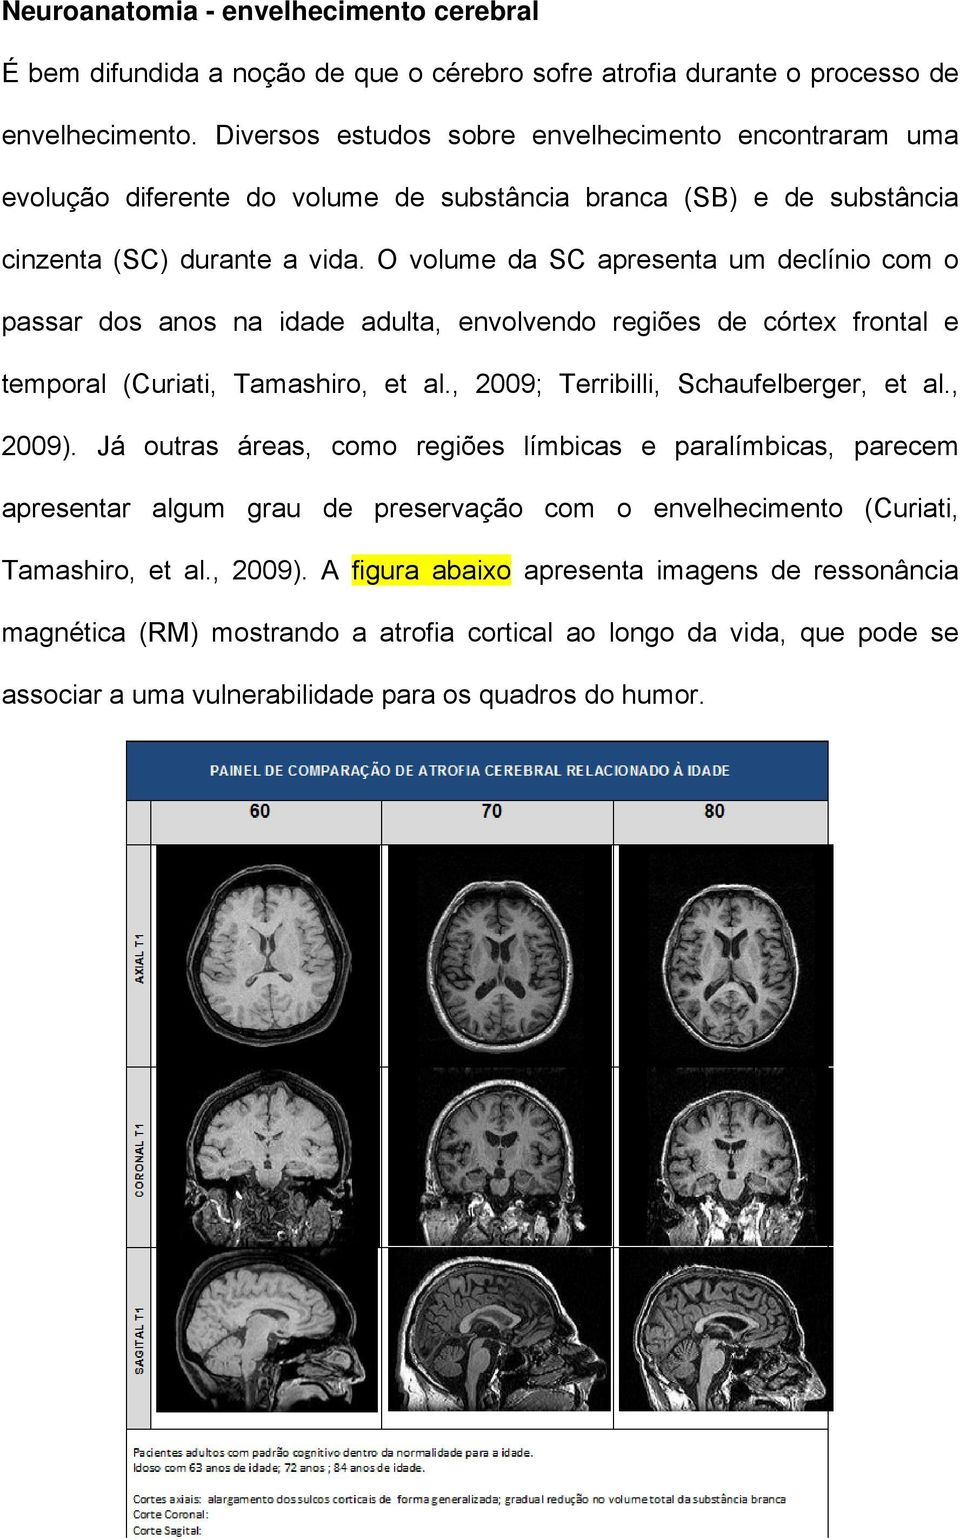 O volume da SC apresenta um declínio com o passar dos anos na idade adulta, envolvendo regiões de córtex frontal e temporal (Curiati, Tamashiro, et al., 2009; Terribilli, Schaufelberger, et al.